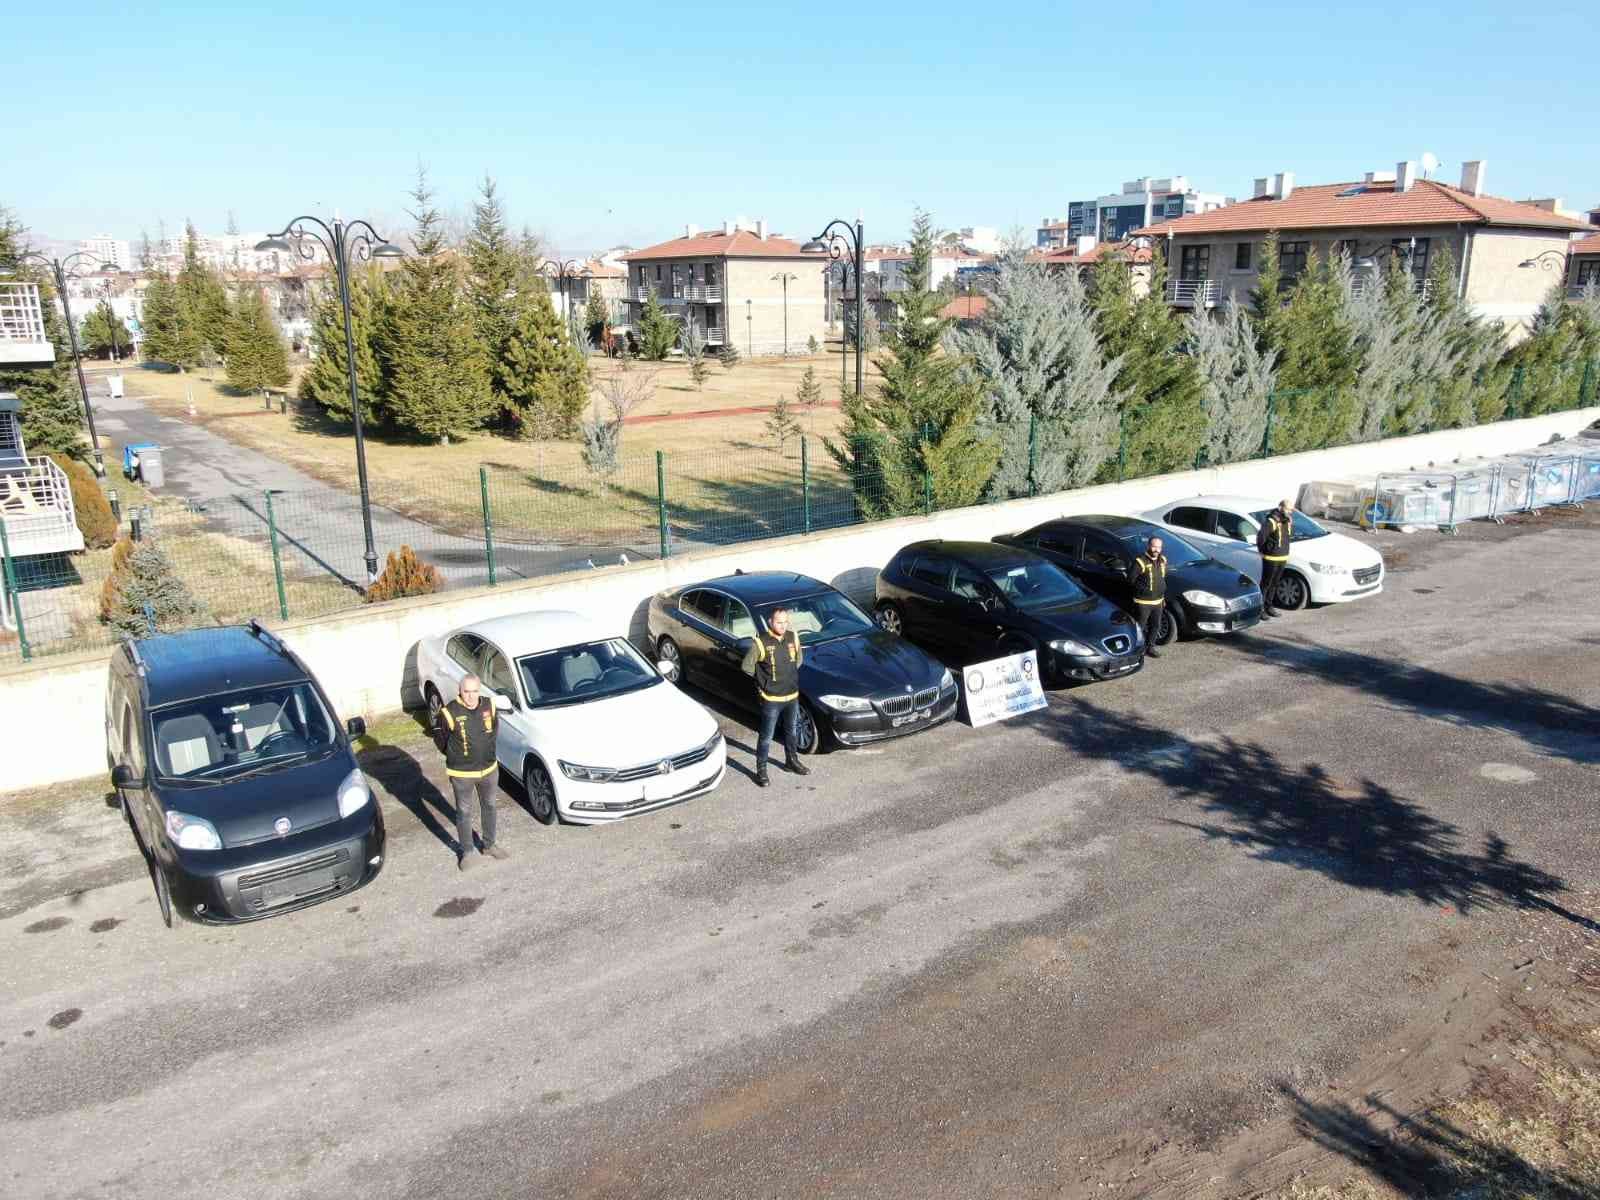 Kayseri polisinden milyonluk change otomobil operasyonu #kayseri